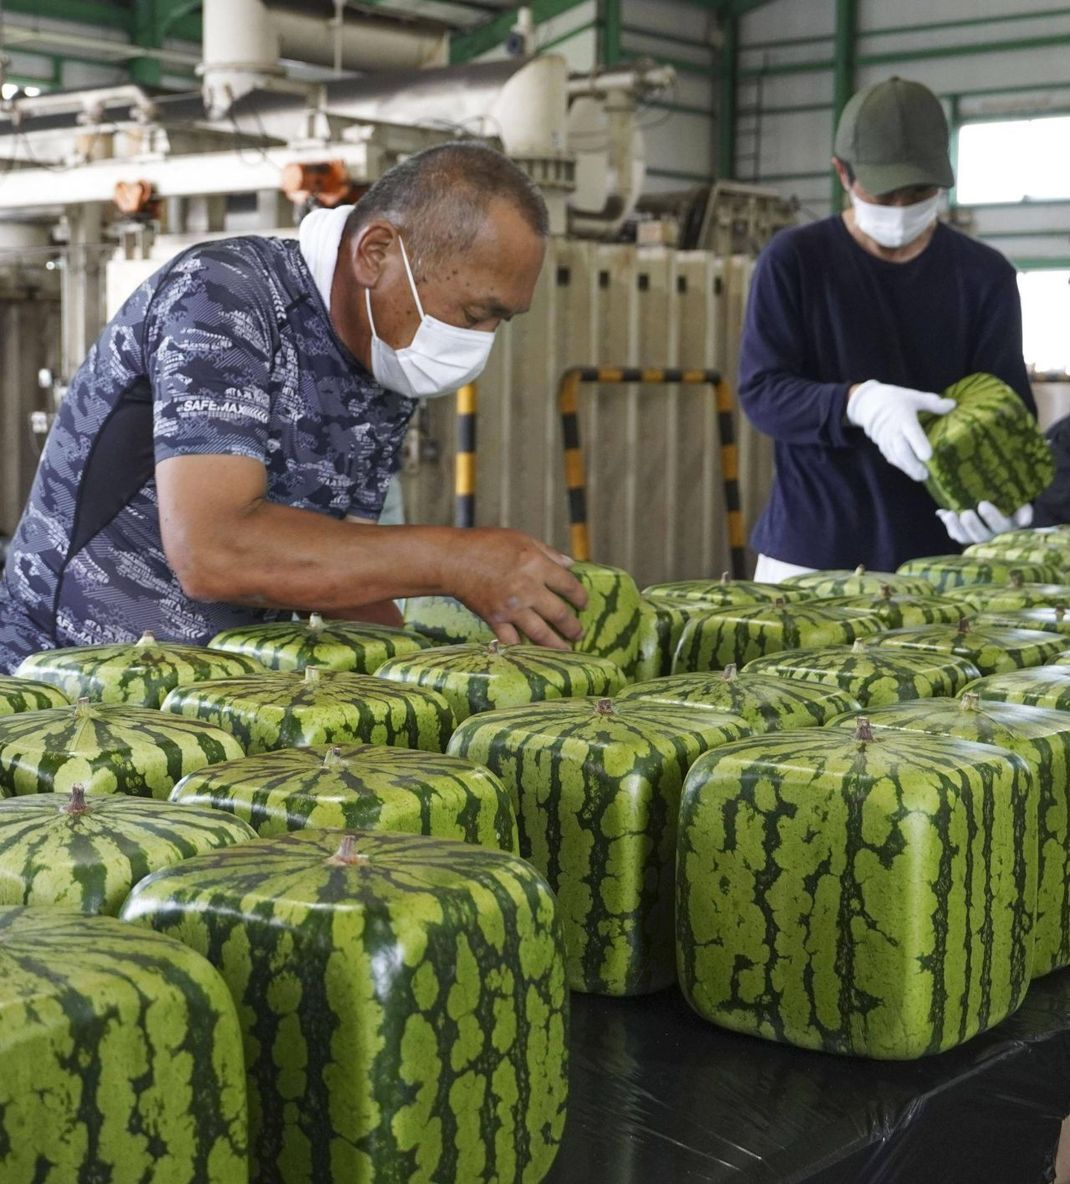 Quadratisch, praktisch: Das sind Wassermelonen in Würfelform. Als kleine Frucht kommen die Melonen in eckige Gläser oder Plastikwürfel und wachsen damit in die Form hinein. Japaner:innen kaufen sie meist als Dekoration für ihr Haus.